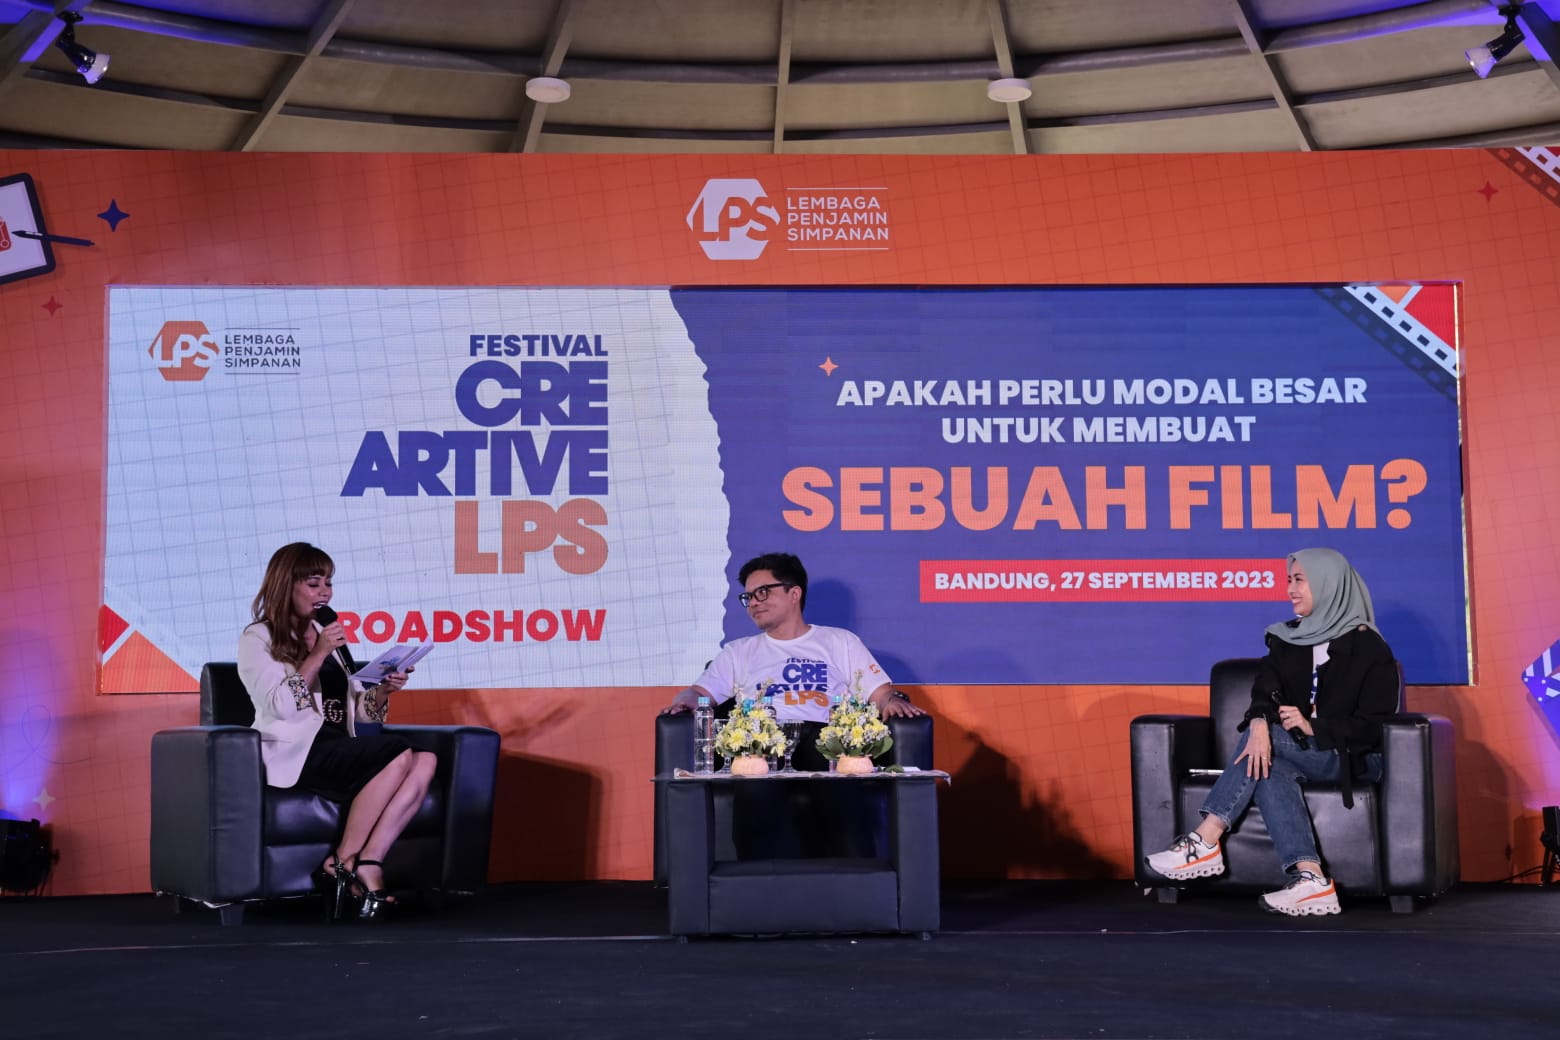 Gelar Roadshow Festival CreArtive 2023 di Bandung, LPS Buka Peluang Berkarya dengan Modal Terbatas di Era Digital